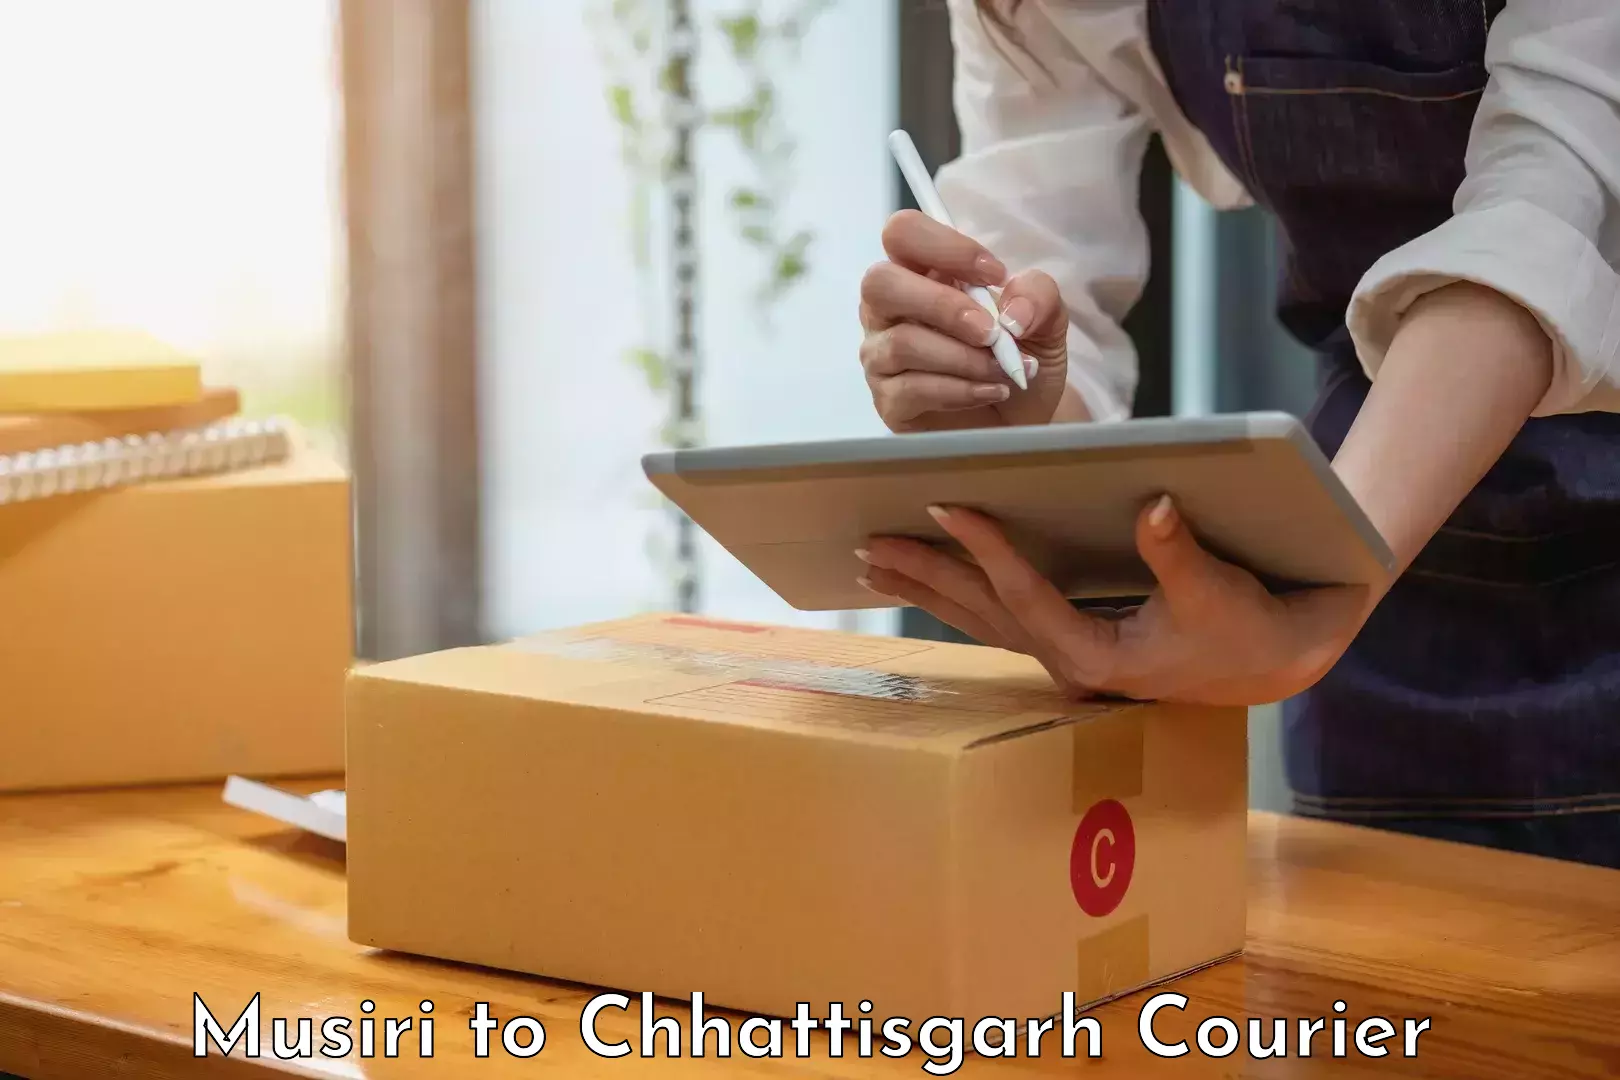 Fast delivery service Musiri to Bijapur Chhattisgarh